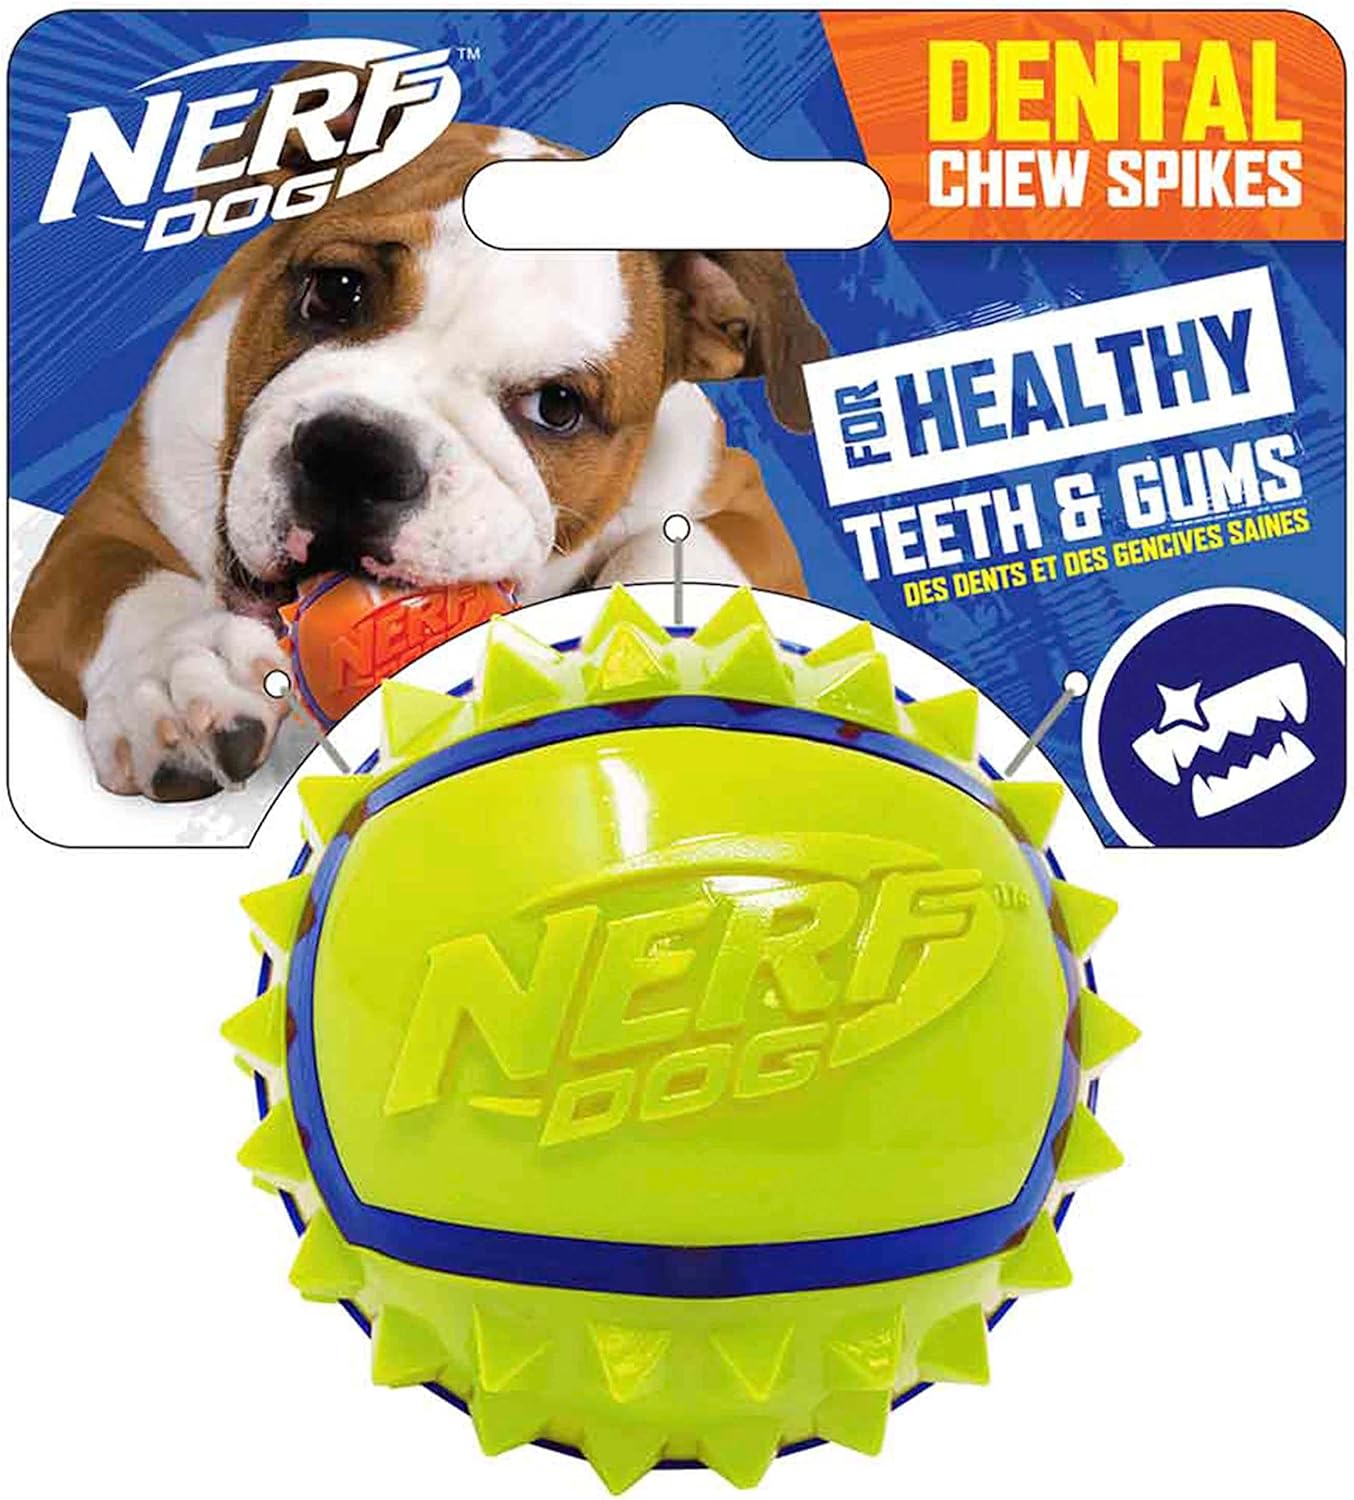 Nerf makes good tough dog toys